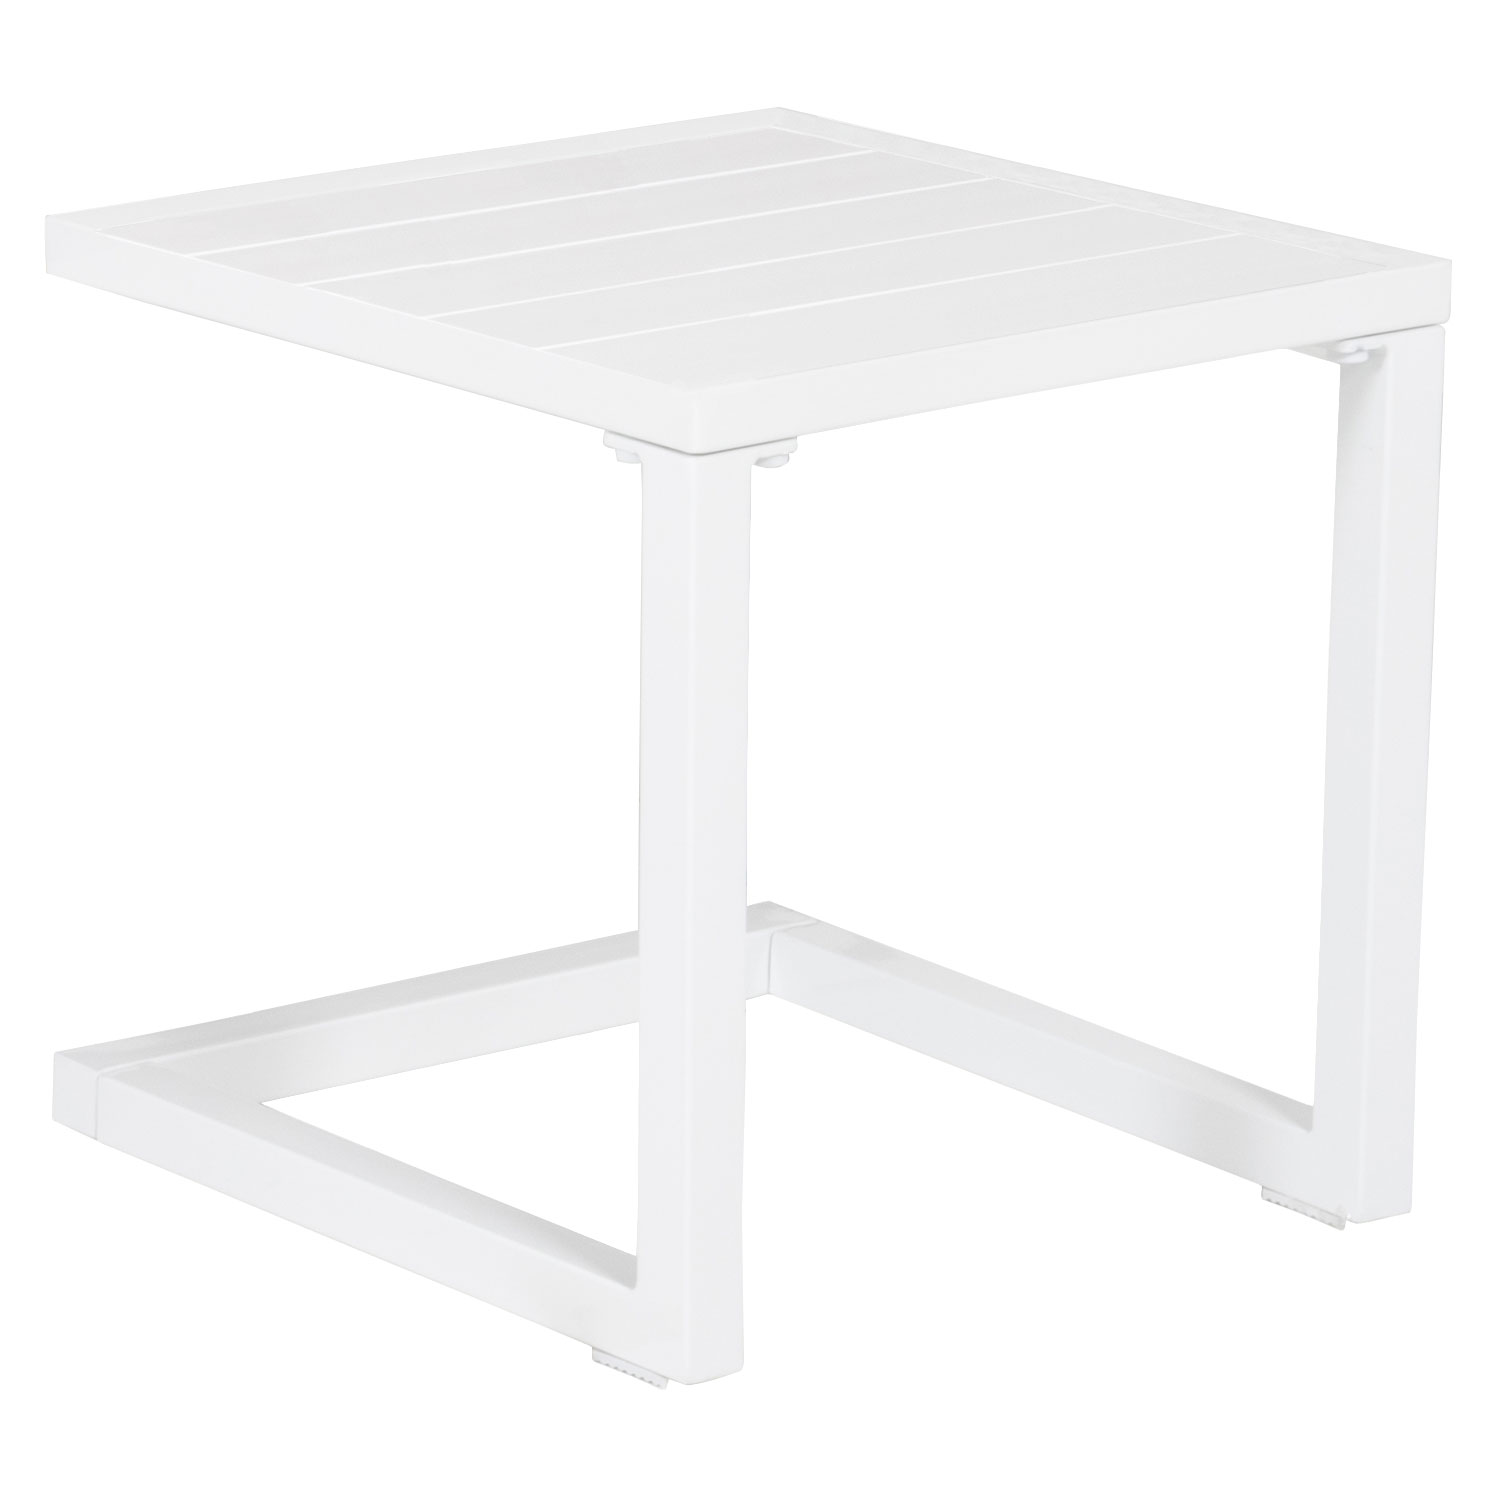 Conjunto de tumbona y mesa auxiliar BARBADOS en textileno color topo - aluminio blanco